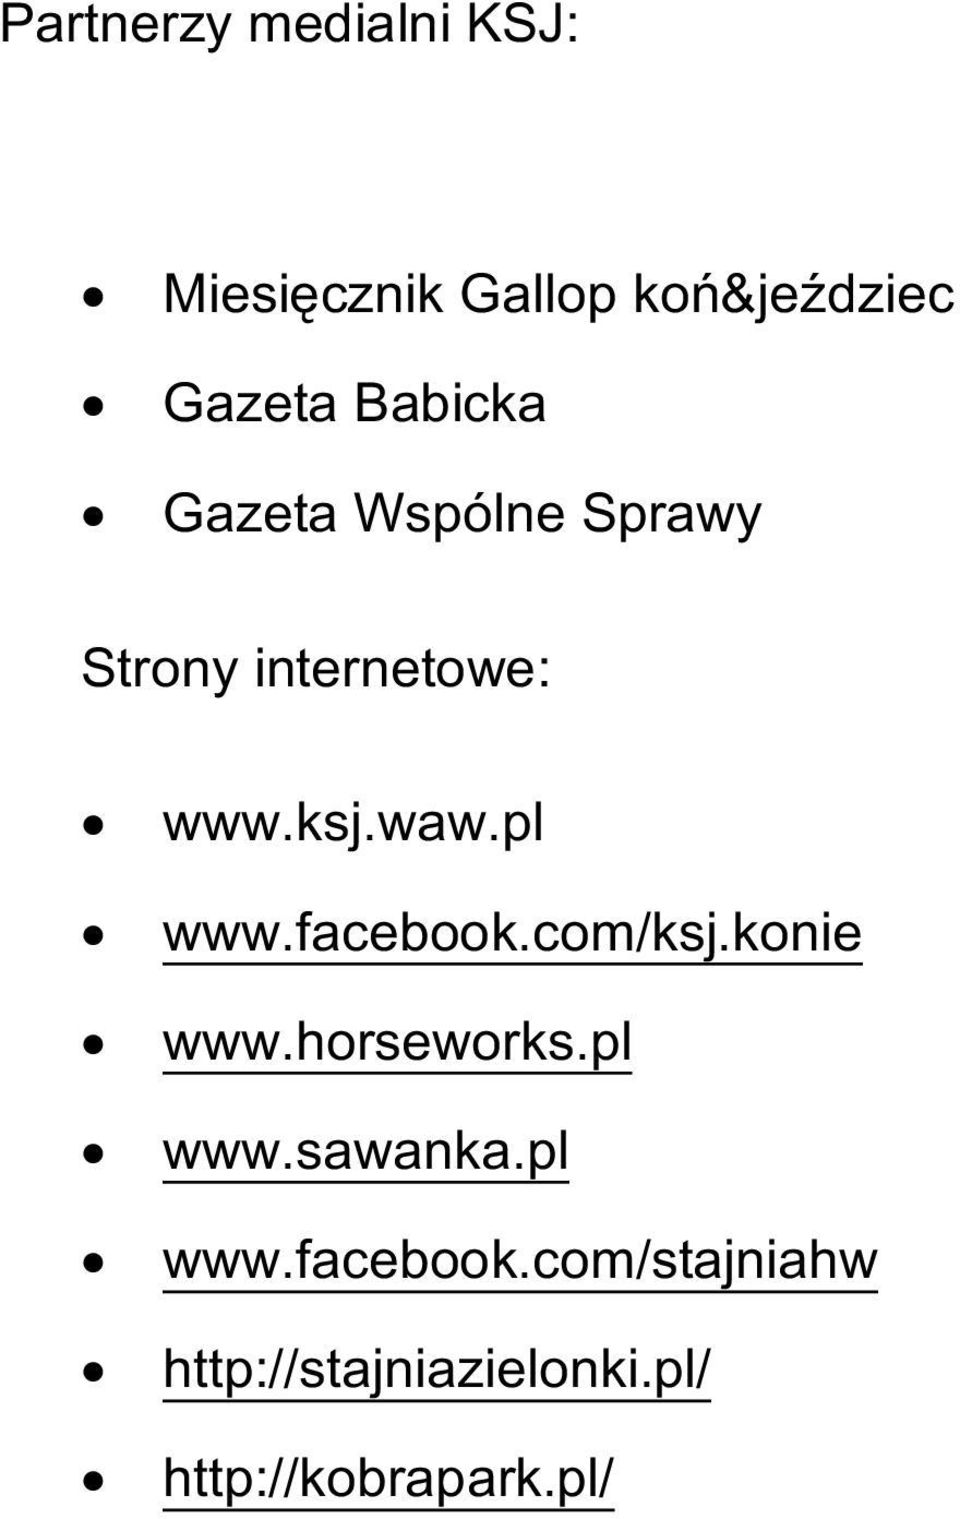 pl www.facebook.com/ksj.konie www.horseworks.pl www.sawanka.